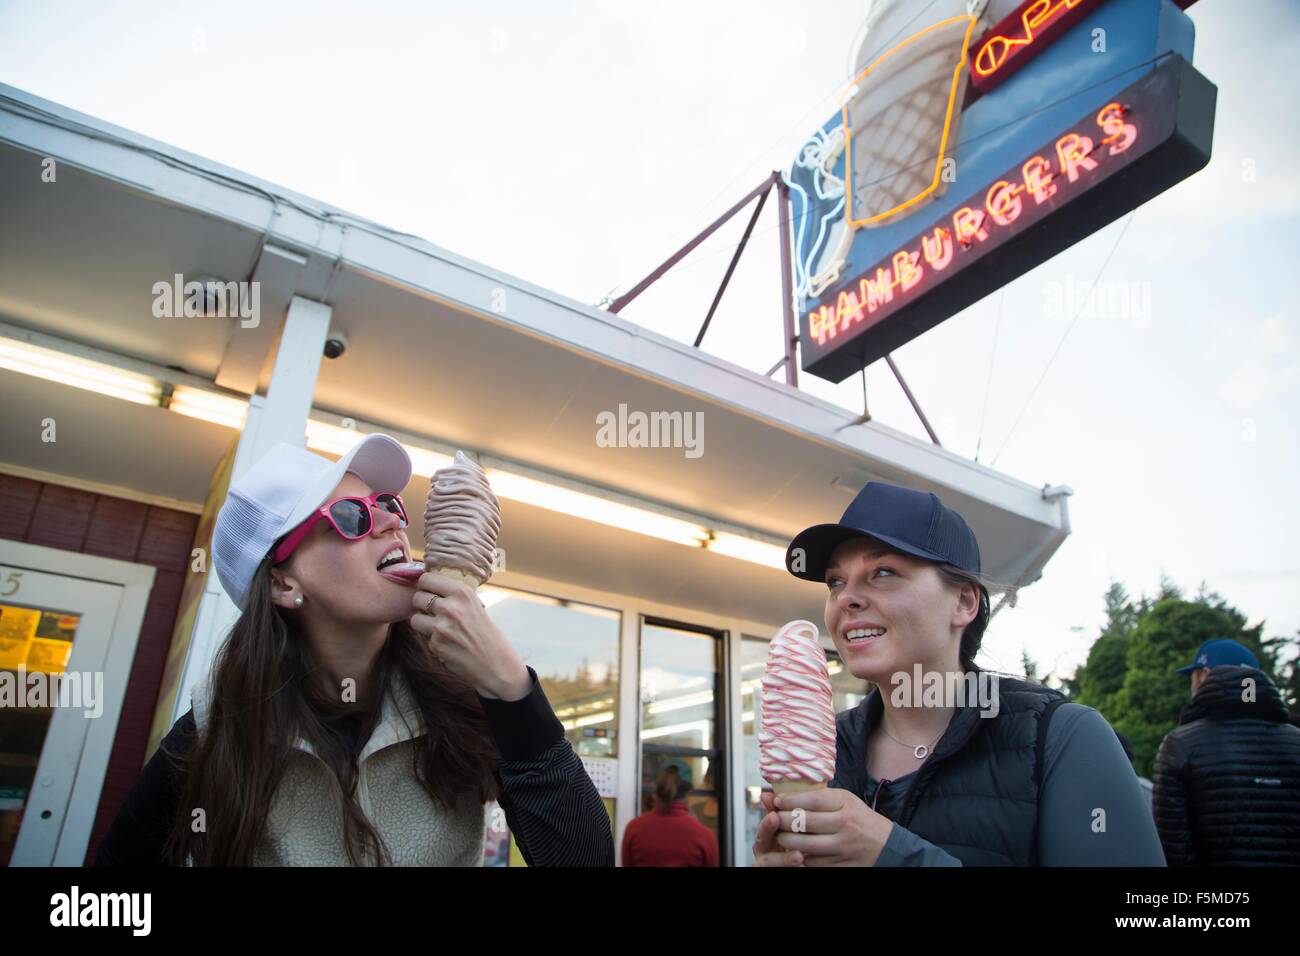 Hikers enjoying ice cream cone at cafe, Lake Blanco, Washington, USA Stock Photo